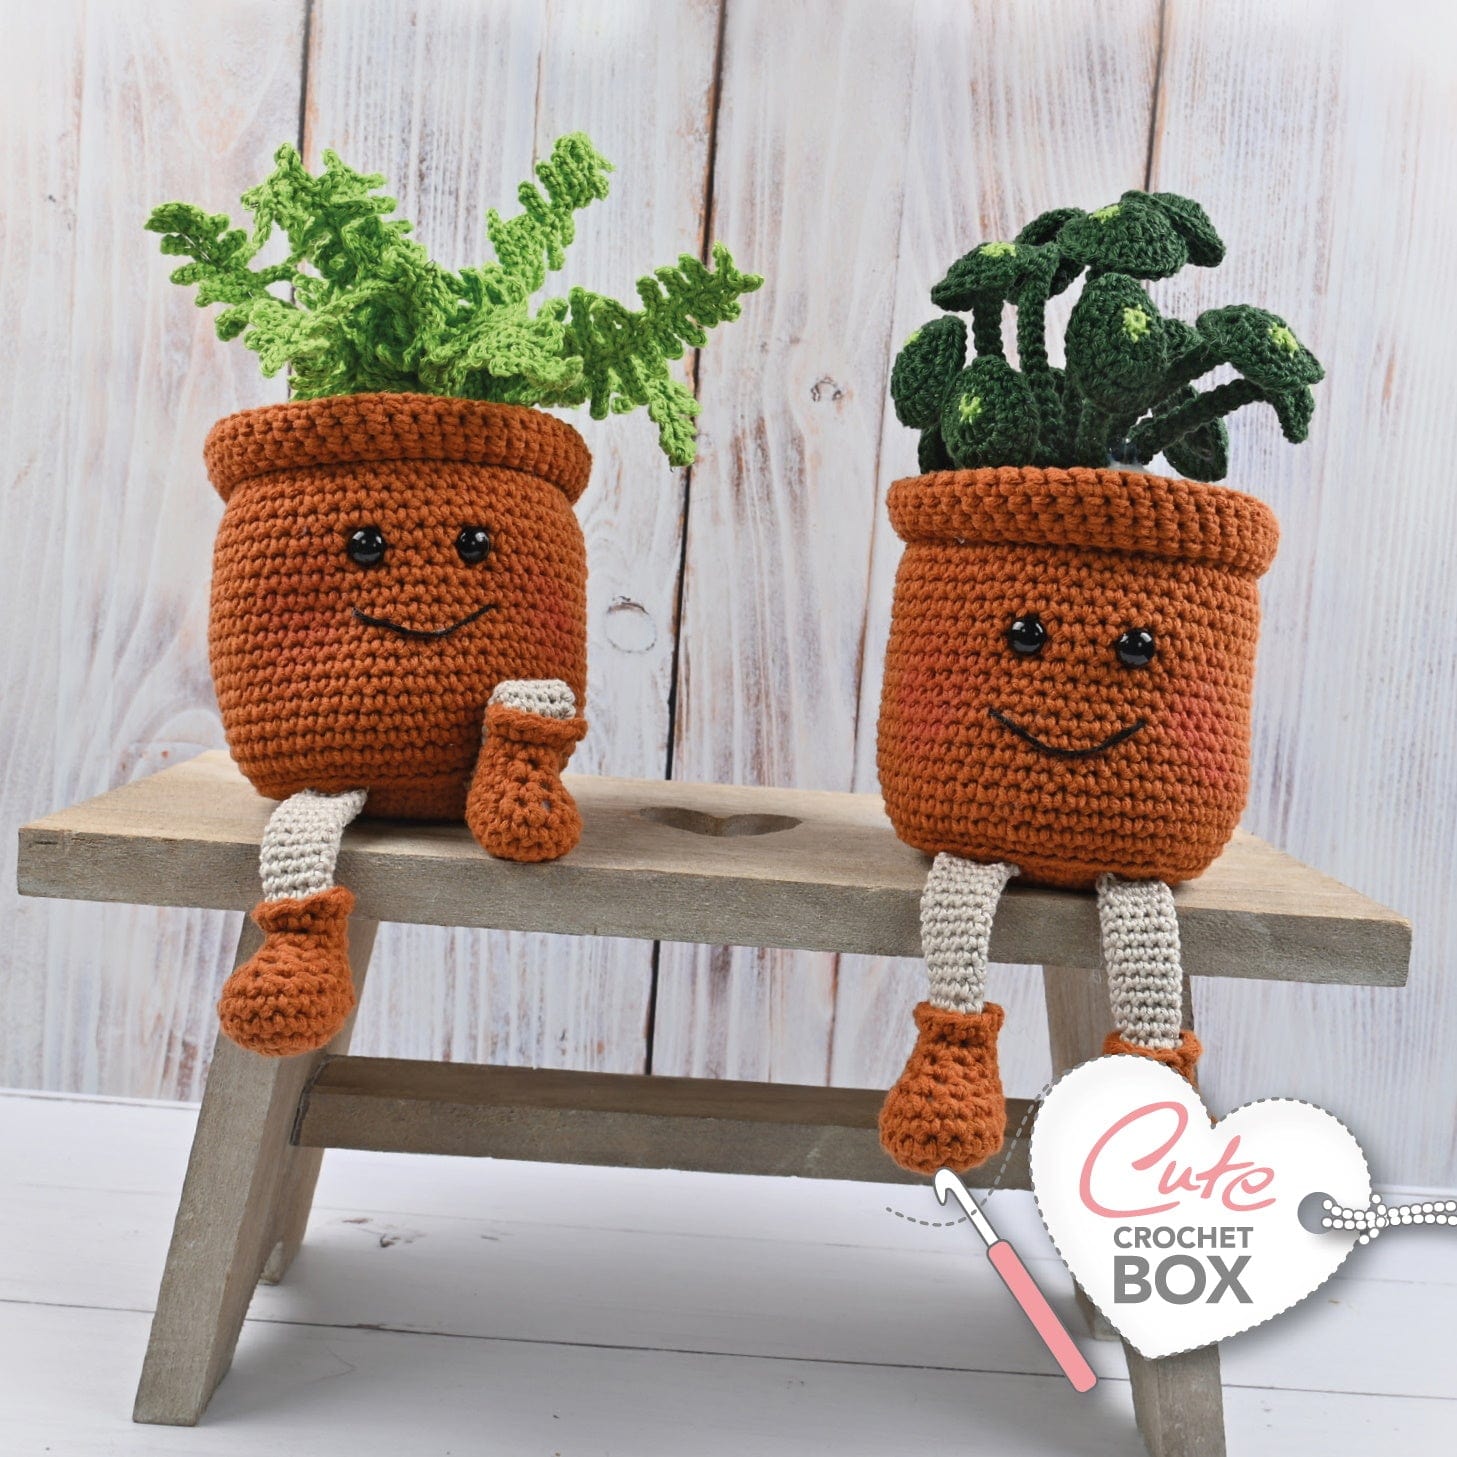 meel Bourgondië Verward zijn Cute Crochet Box nr. 33 - Plantastische Potjes | CuteDutch